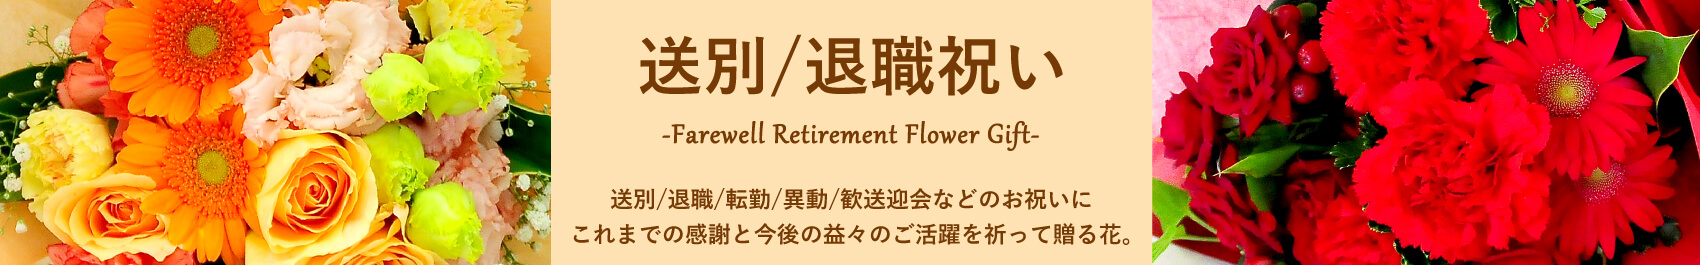 送別/退職祝いに贈る花